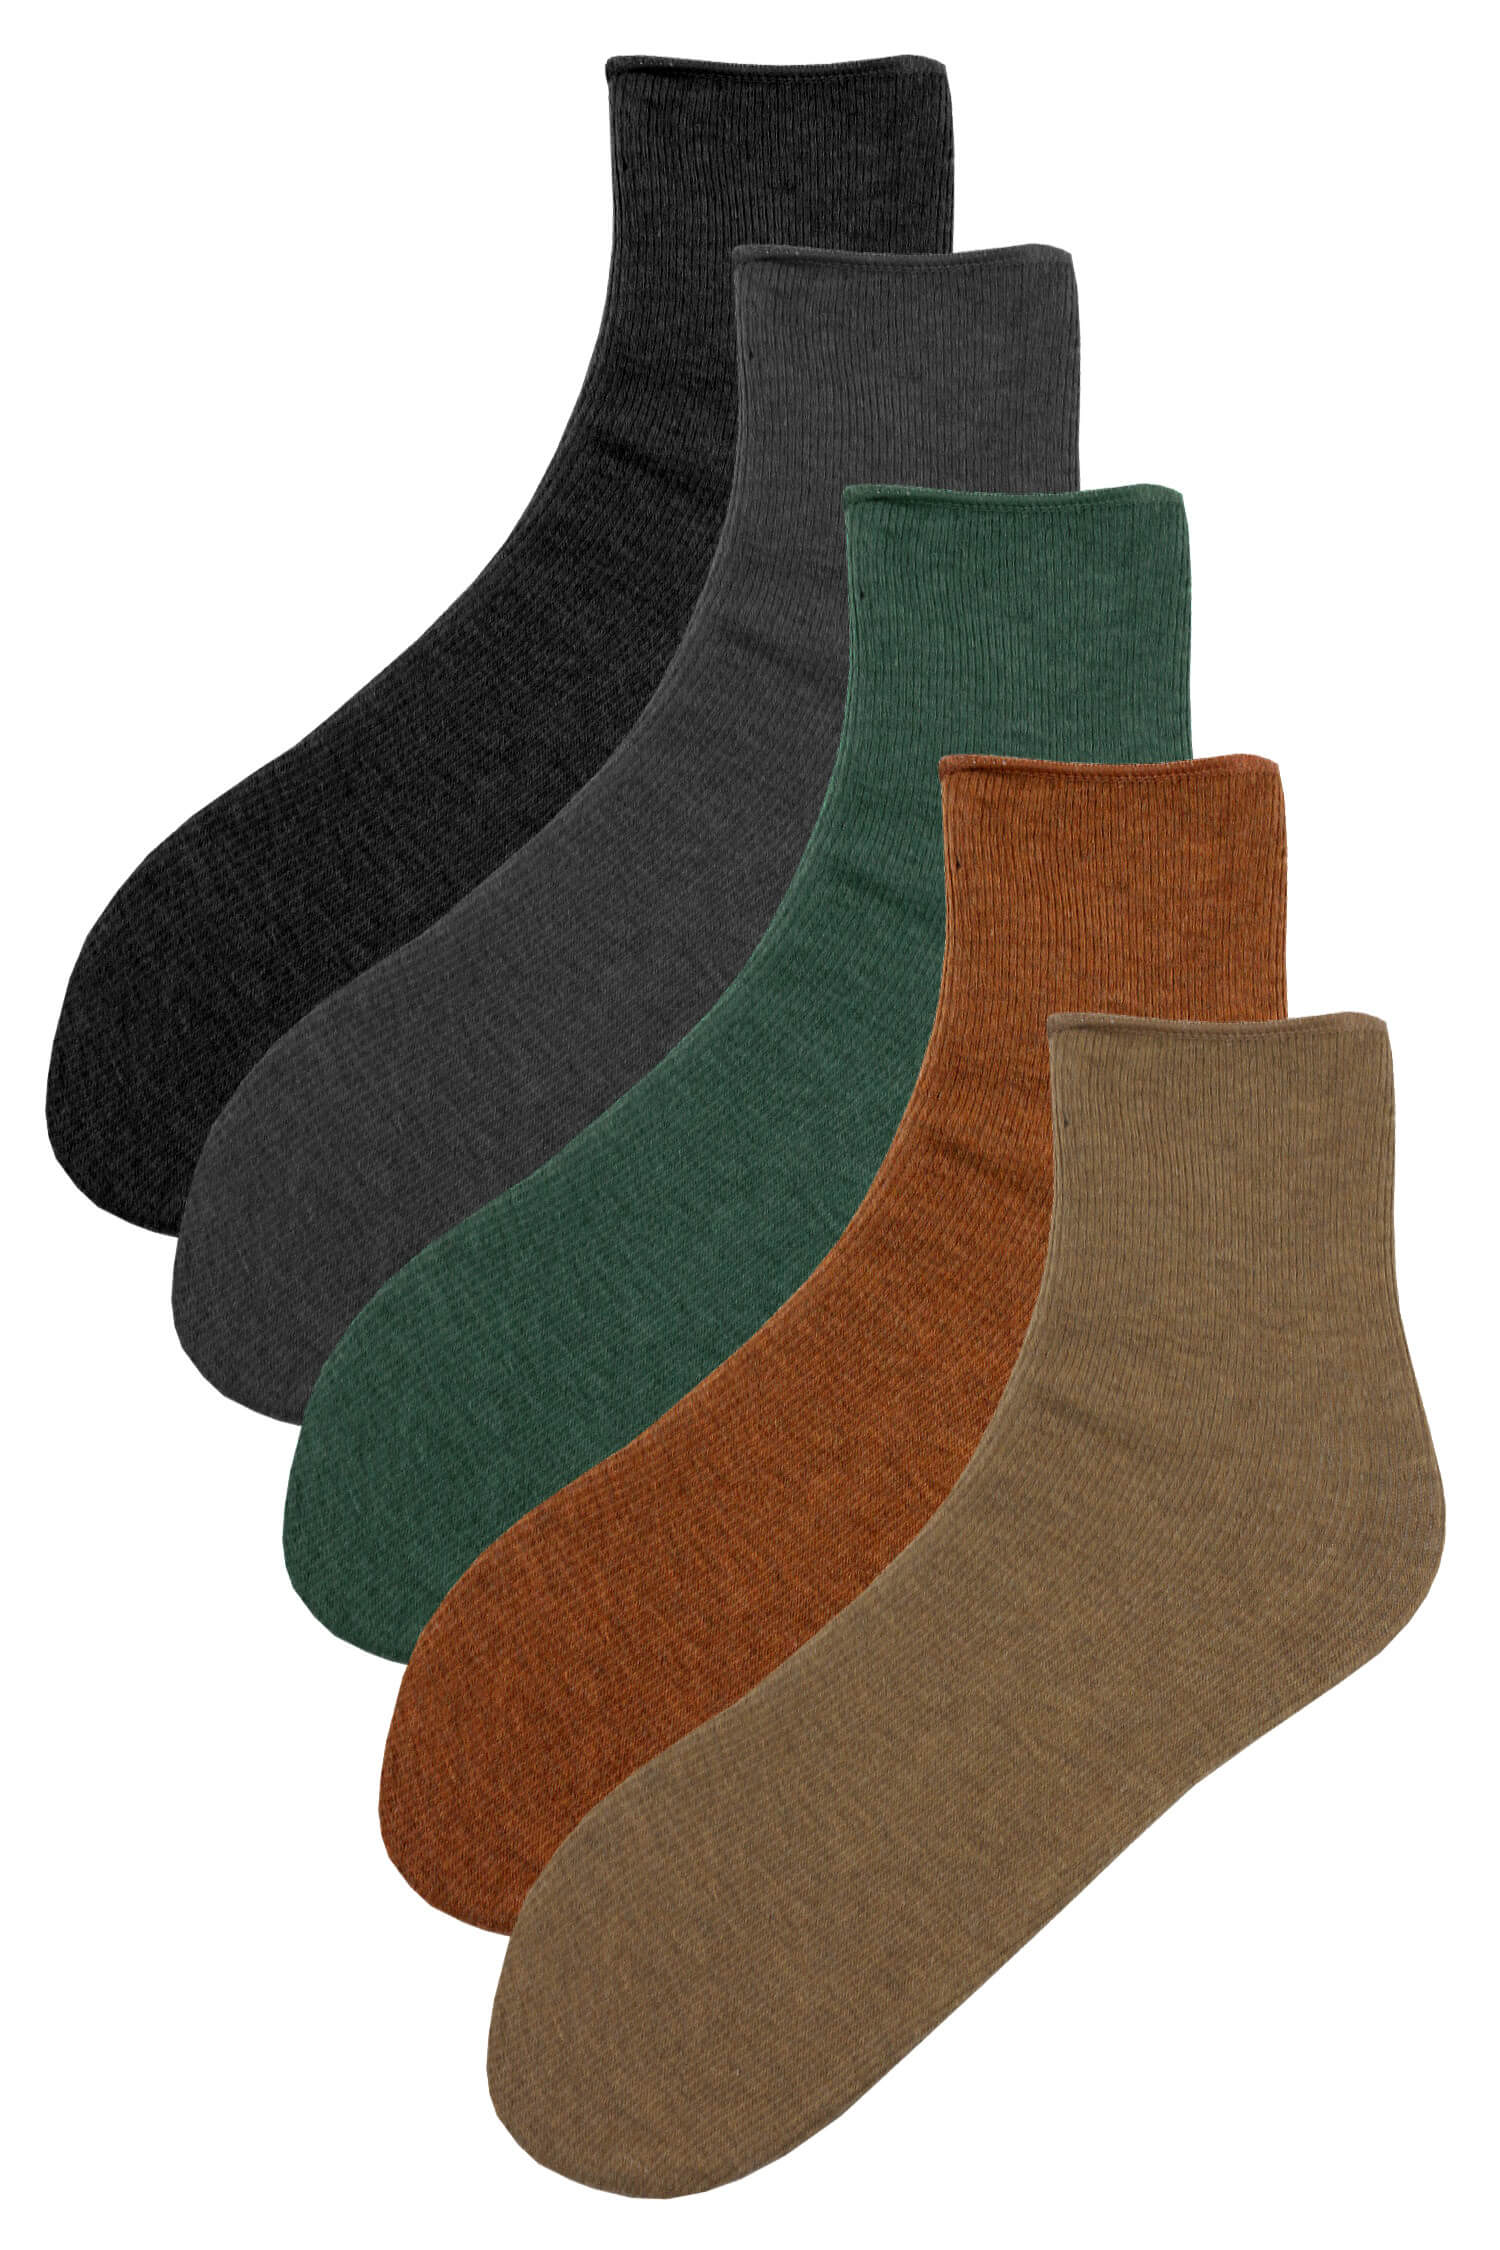 Alpaka teplé dámské ponožky 888 - 3Bal 38-41 vícebarevná